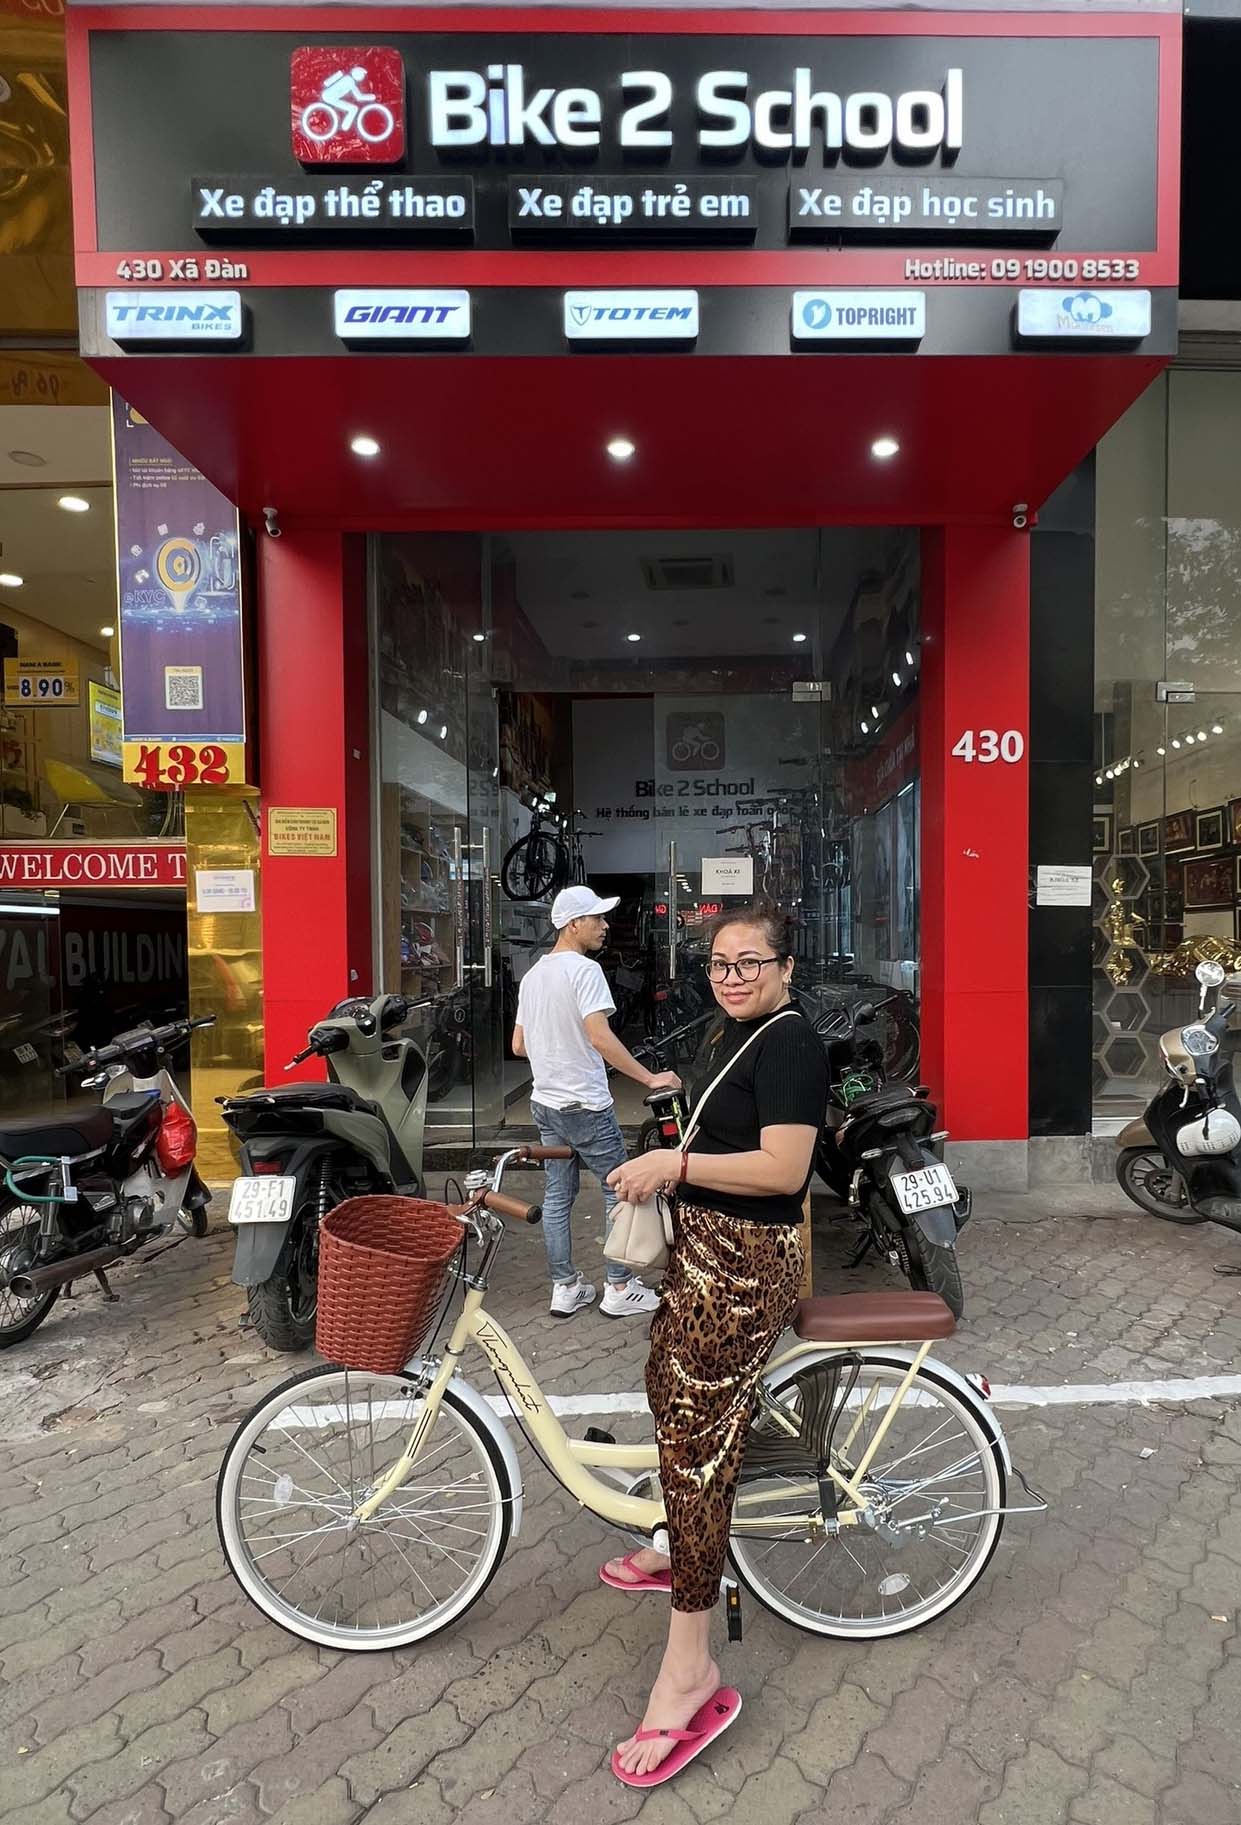 Cửa hàng xe đạp Bike2School tại 430 Xã Đàn, Đống Đa, Hà Nội